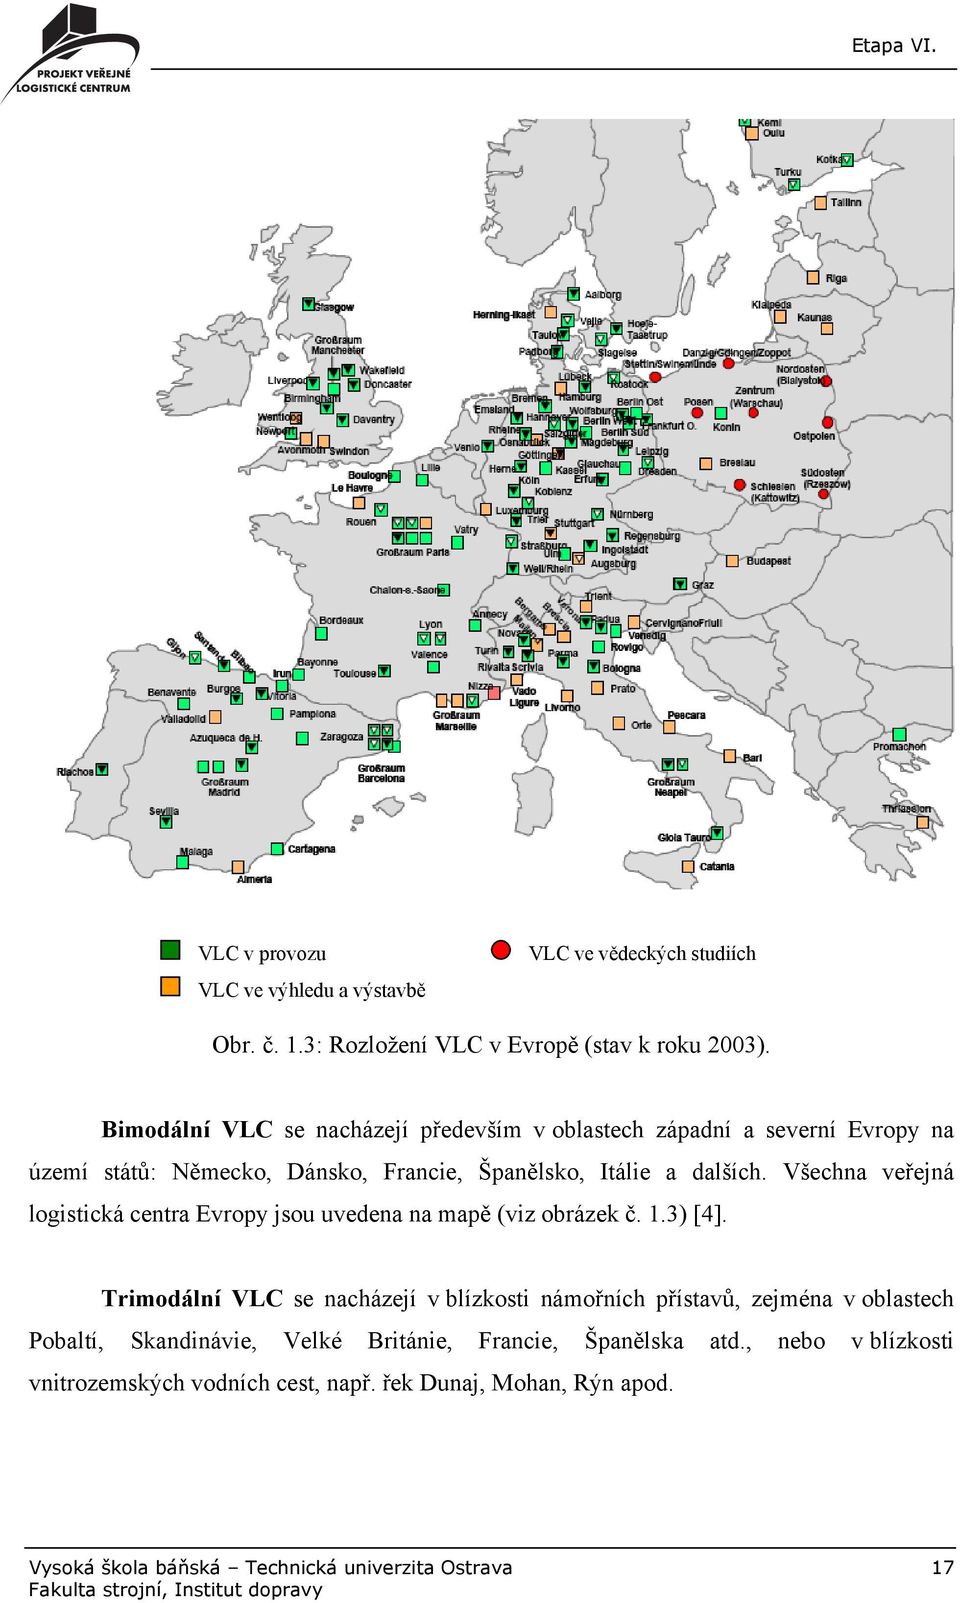 Všechna veřejná logistická centra Evropy jsou uvedena na mapě (viz obrázek č. 1.3) [4].